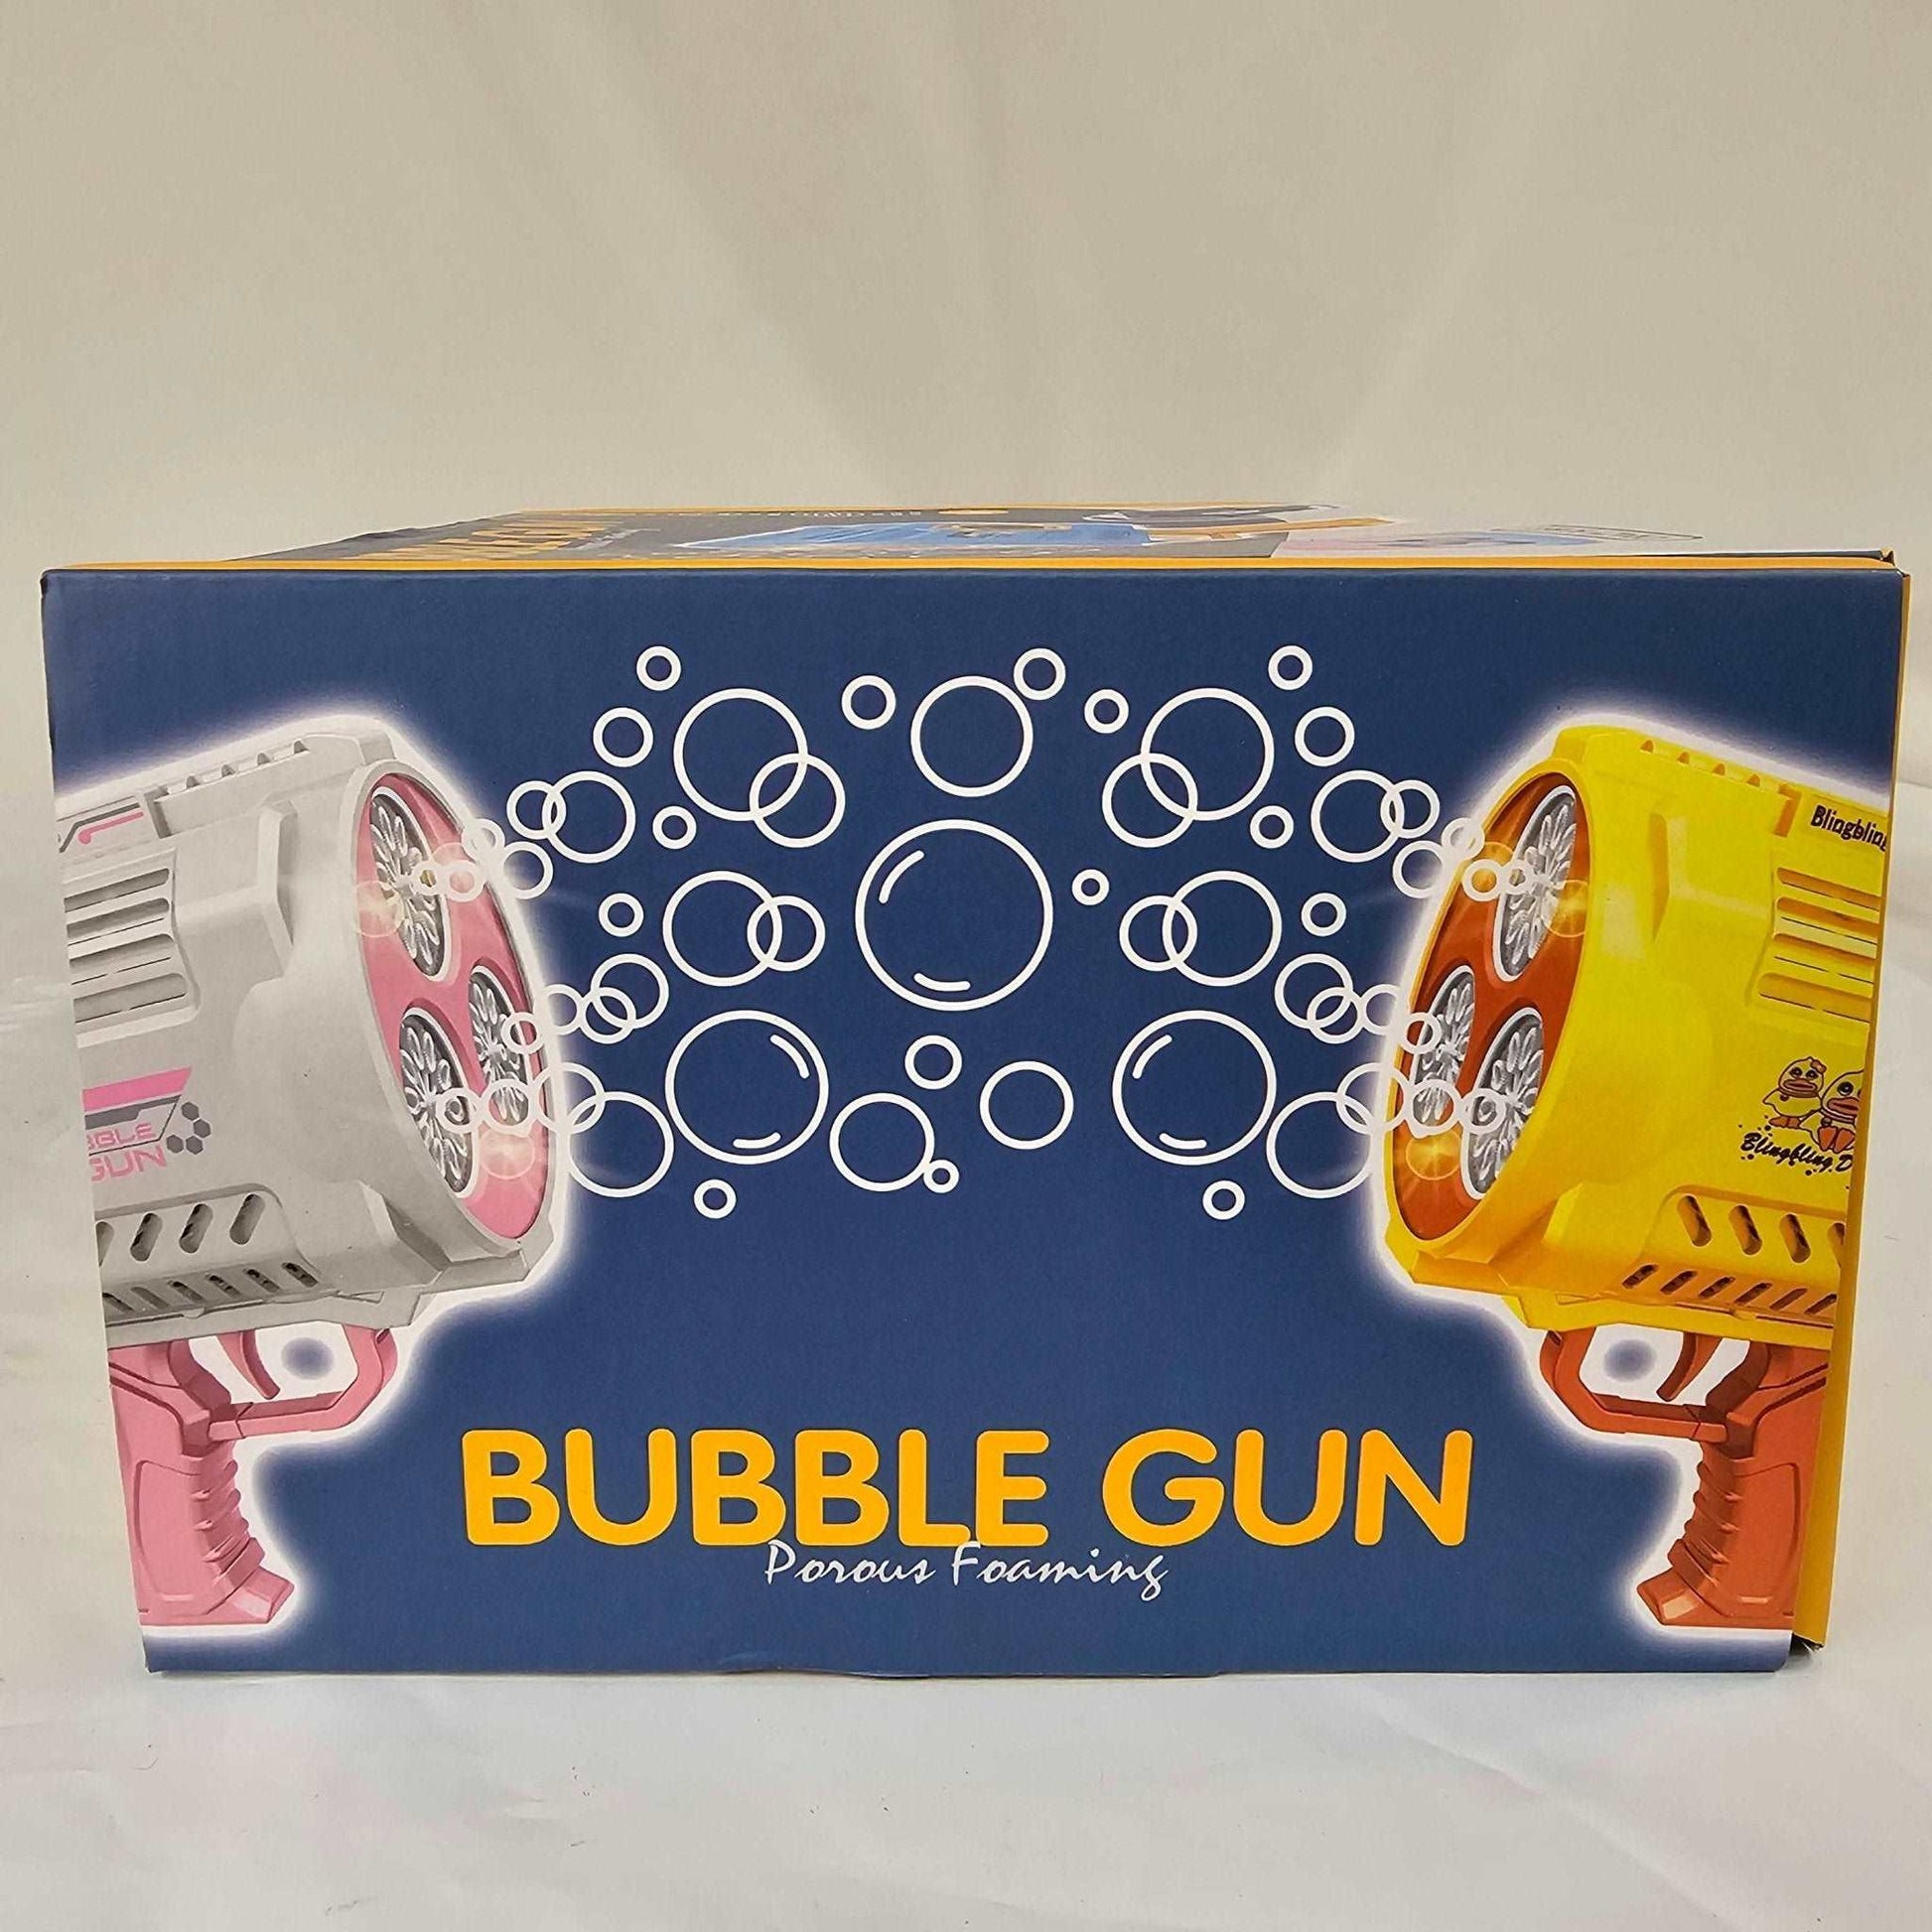 36 Hole Bubble Gun Porous Foaming ZKA007 - DQ Distribution